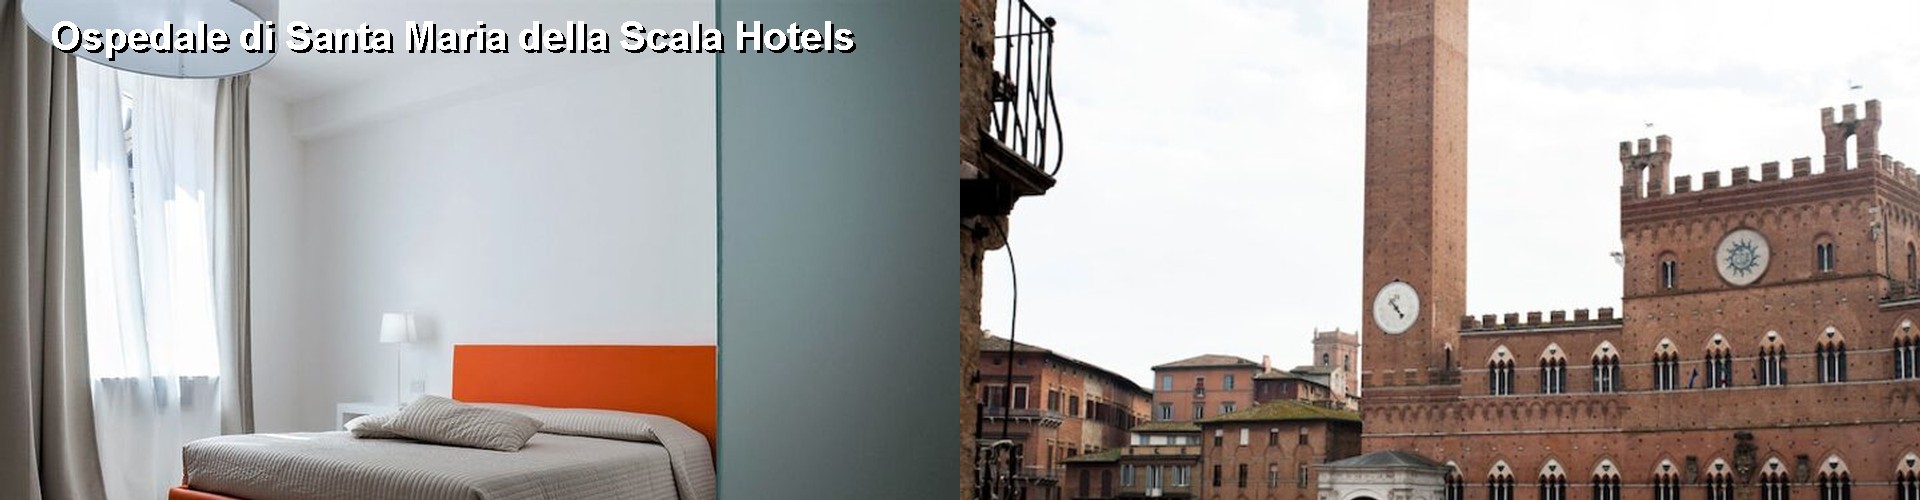 5 Best Hotels near Ospedale di Santa Maria della Scala